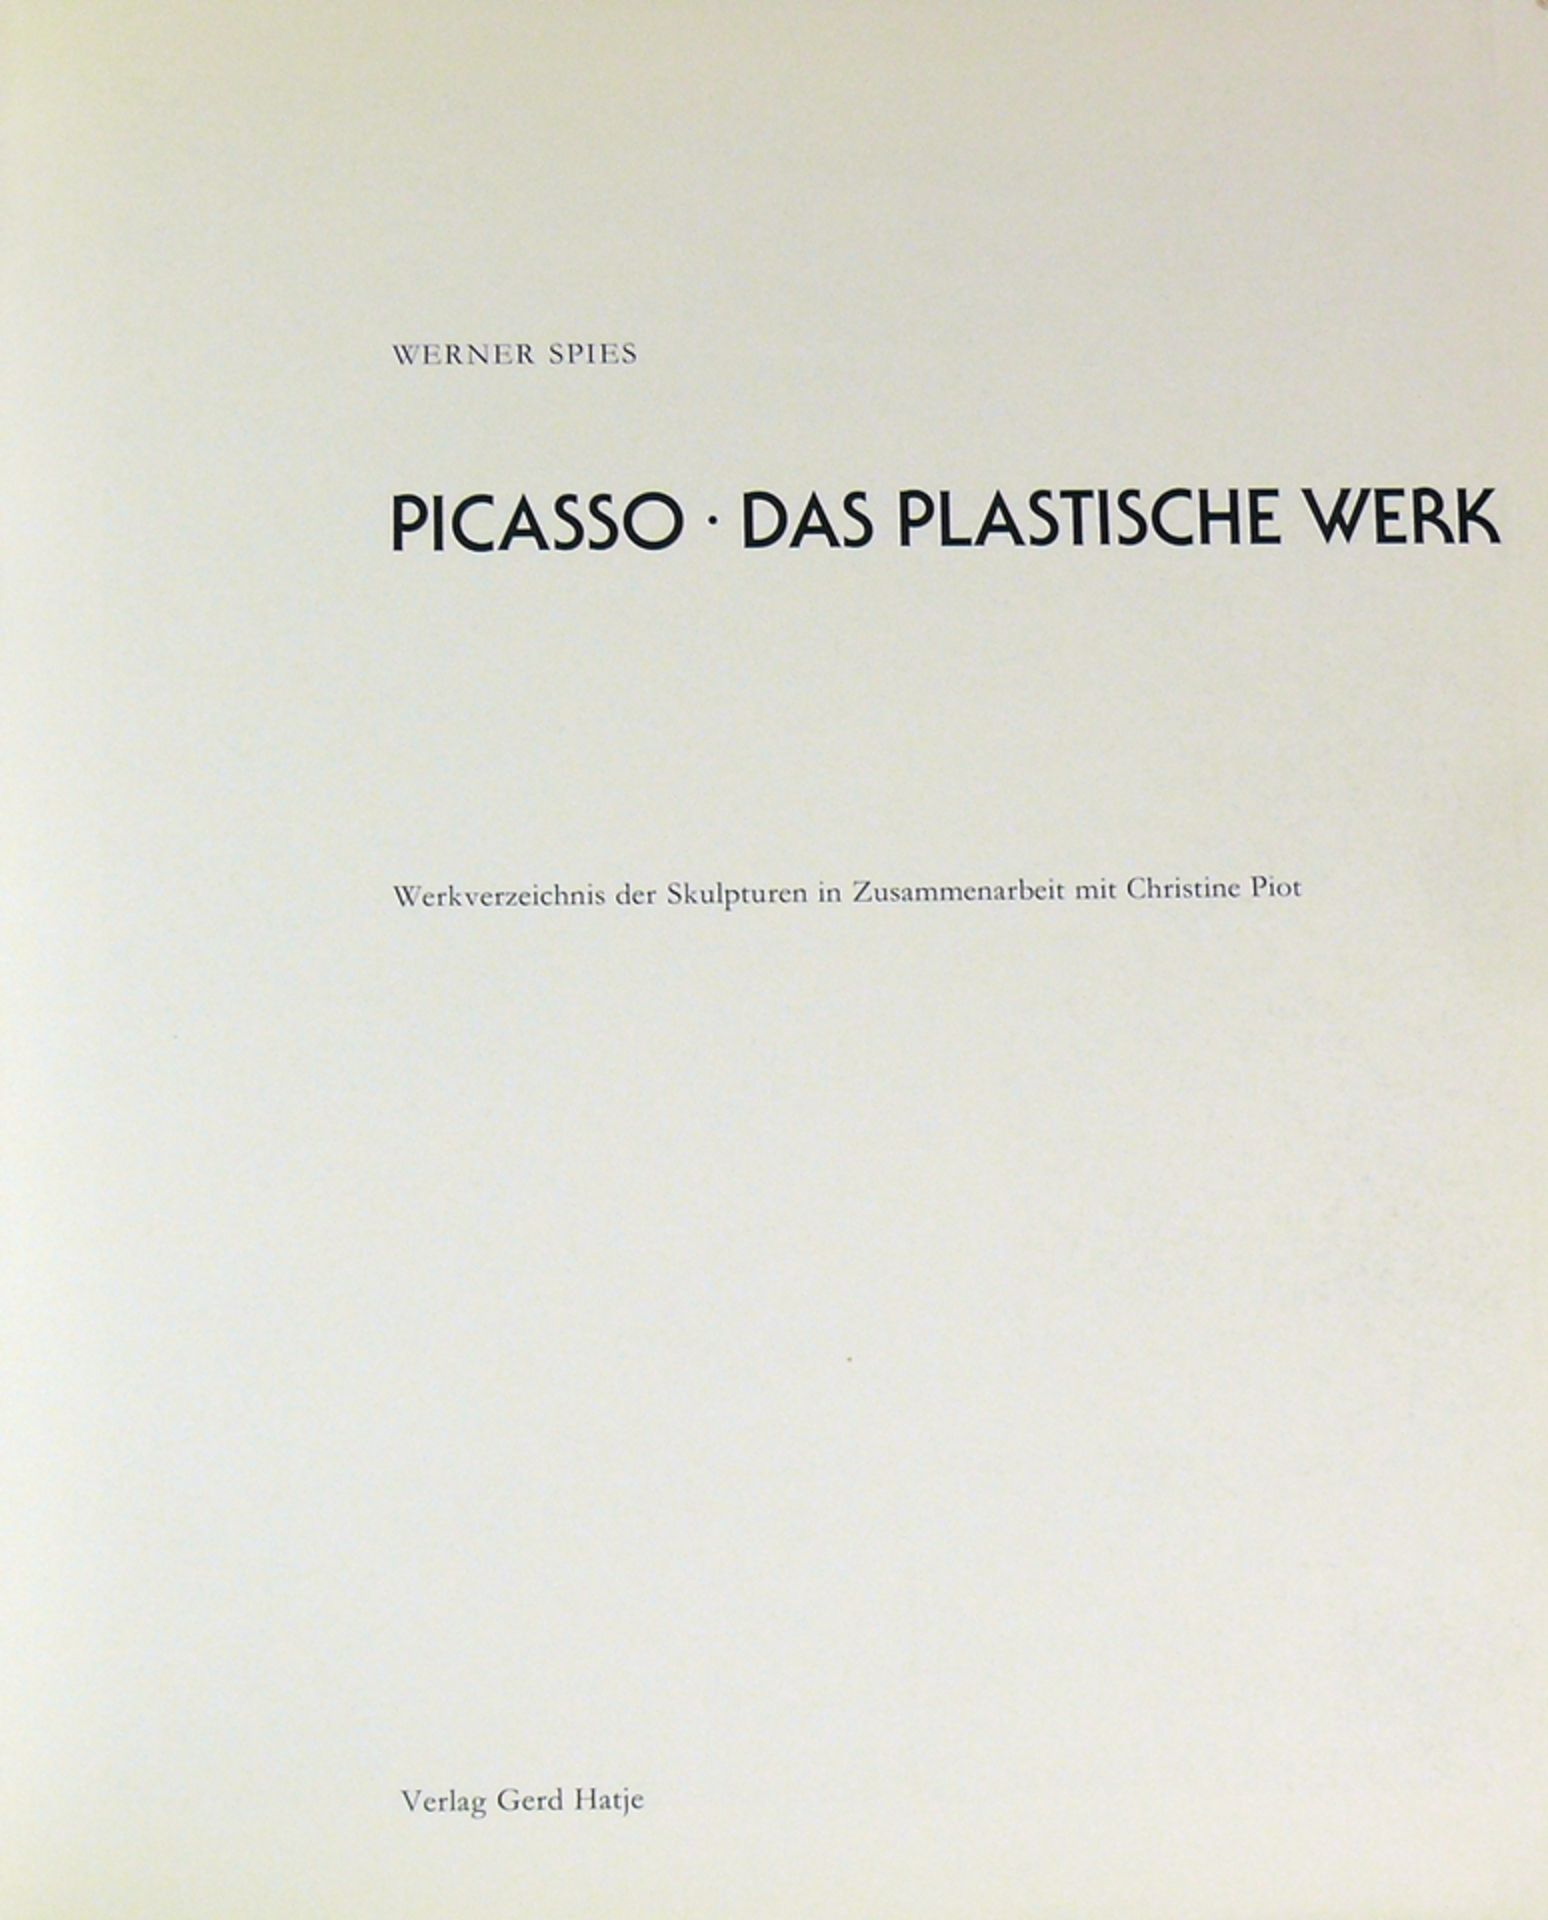 Picasso - Das plastische Werk - Image 2 of 3